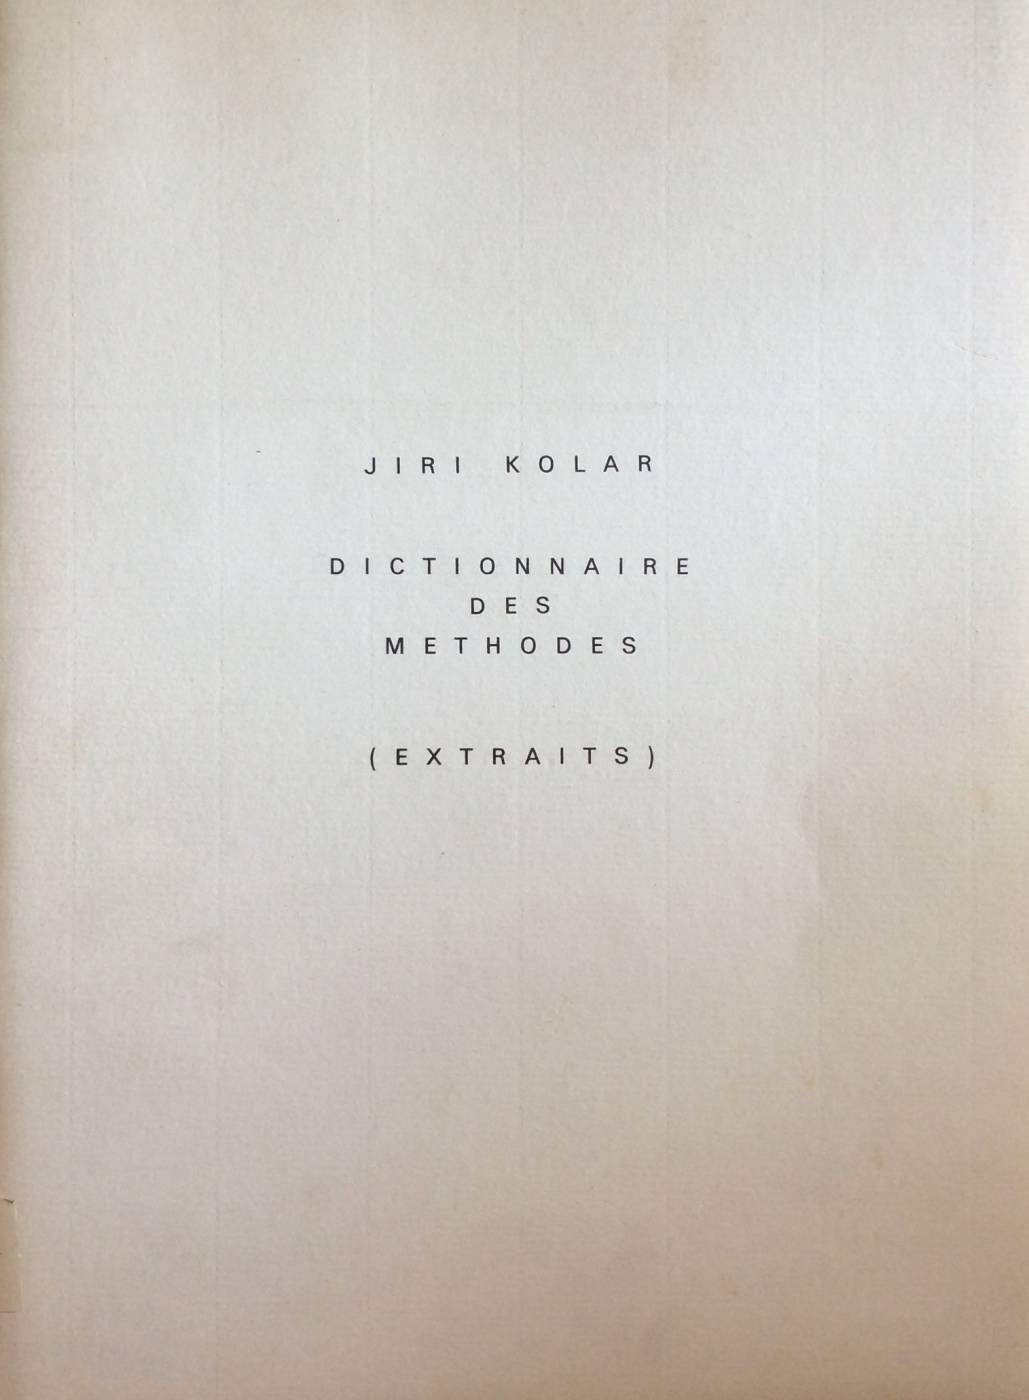 Jiří Kolář – Dictionnaire des methodes (extraits)